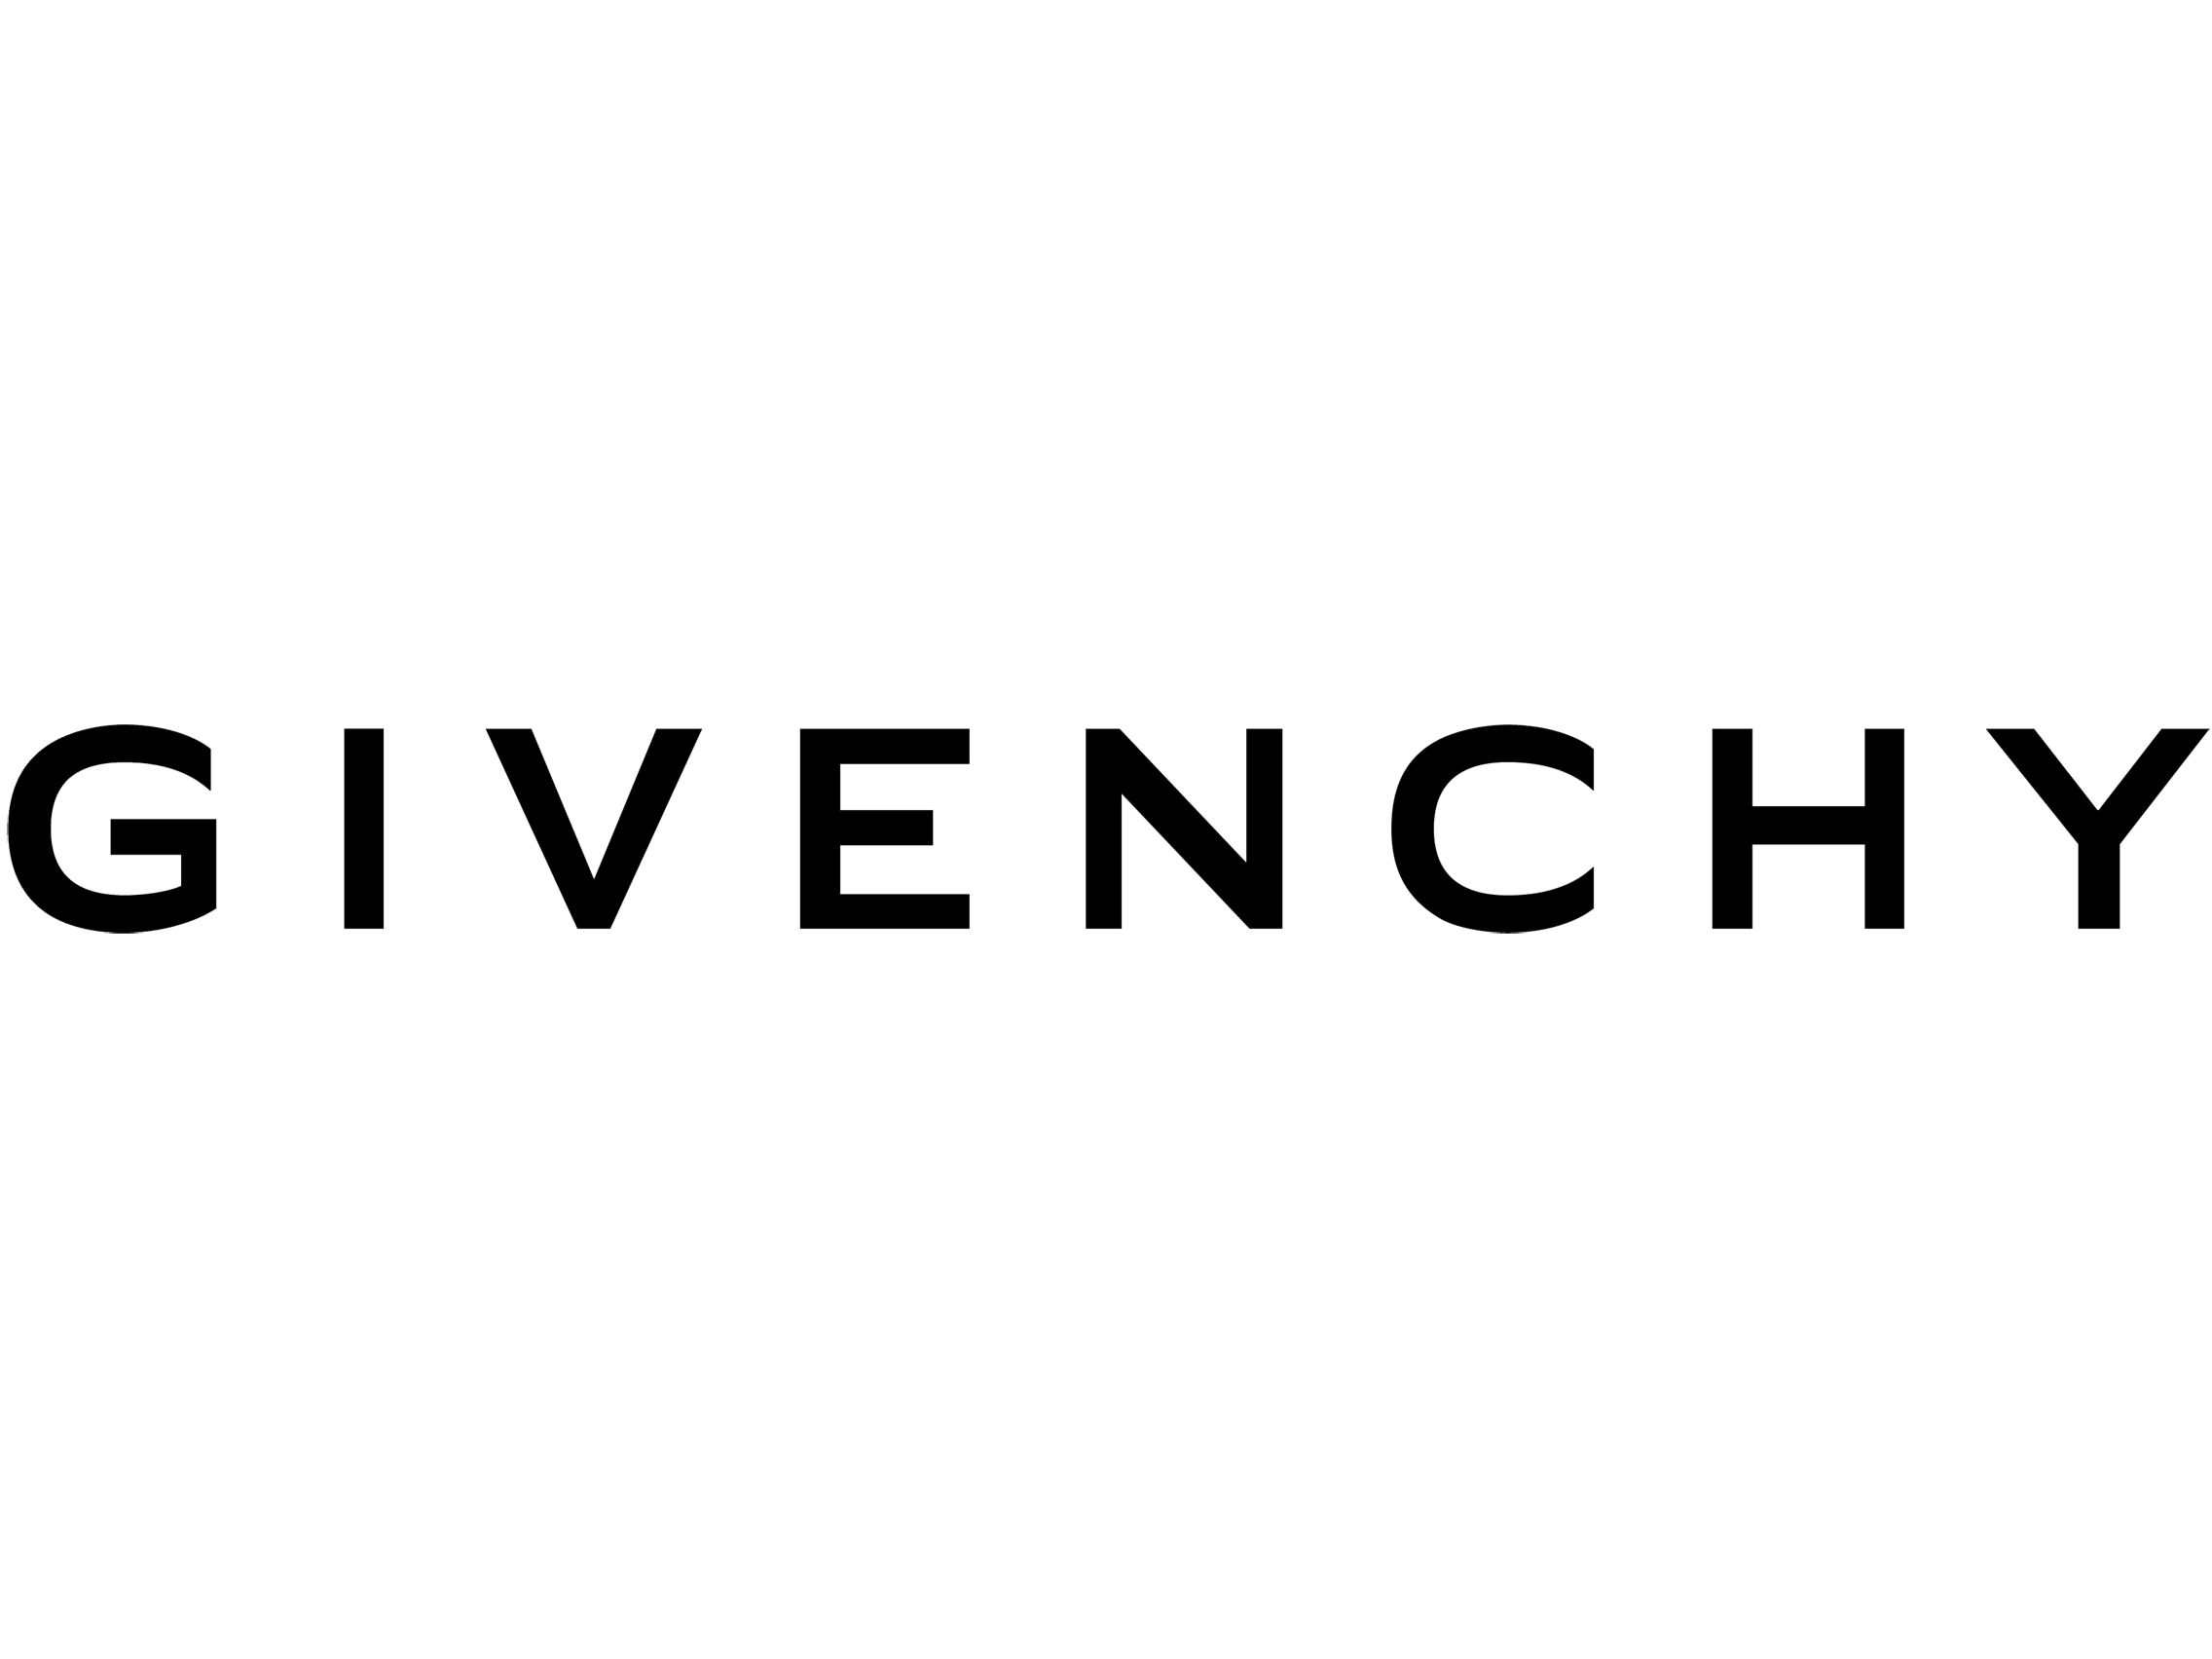 Givency Logo - Givenchy logo